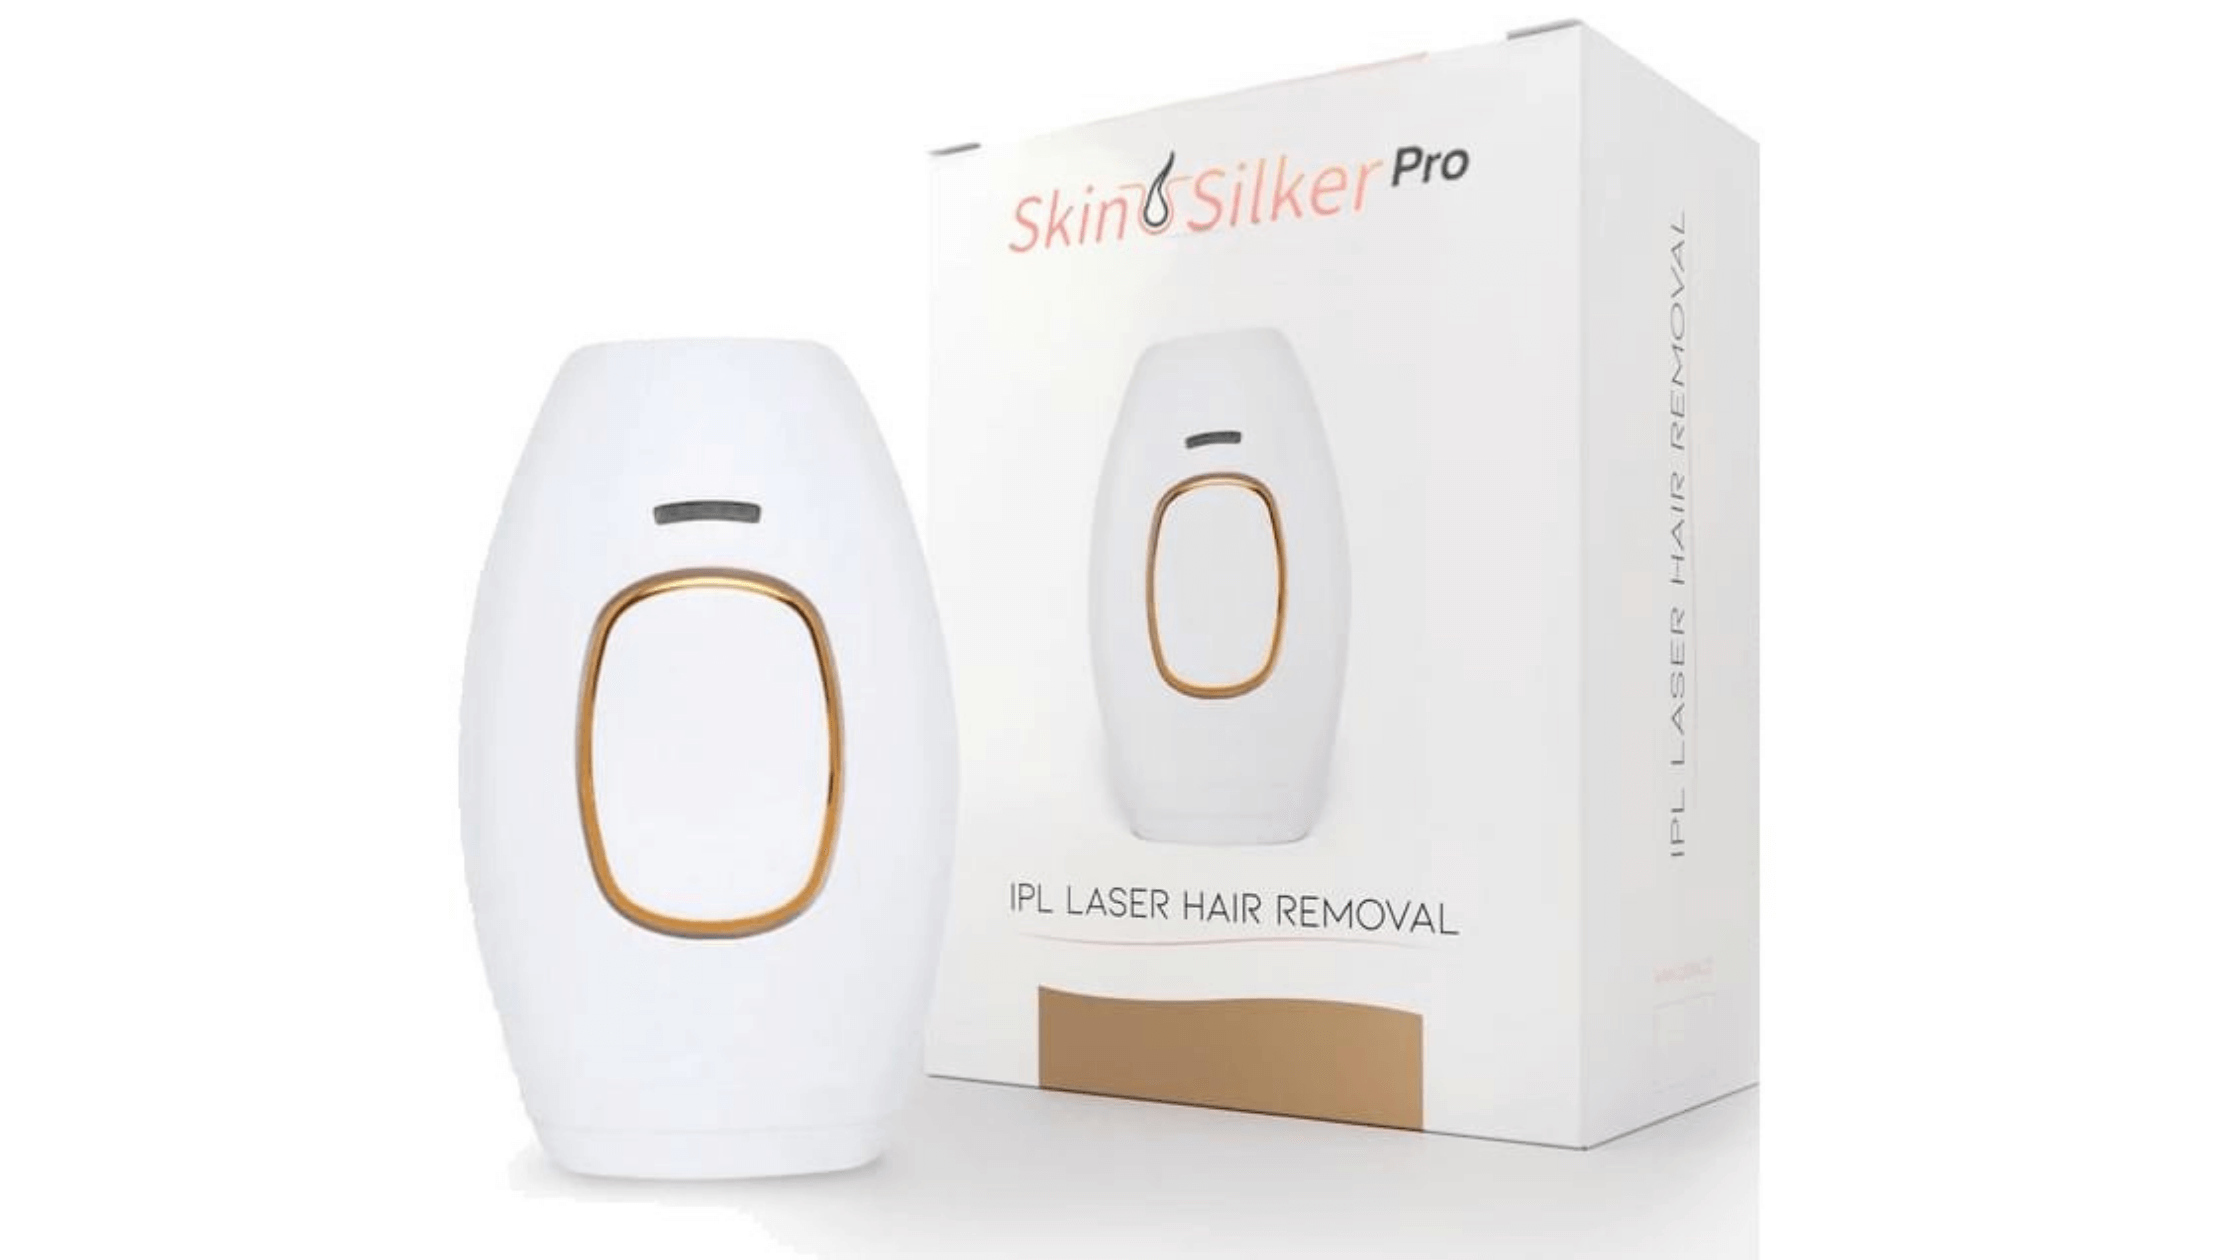 Skin Silker Pro Device